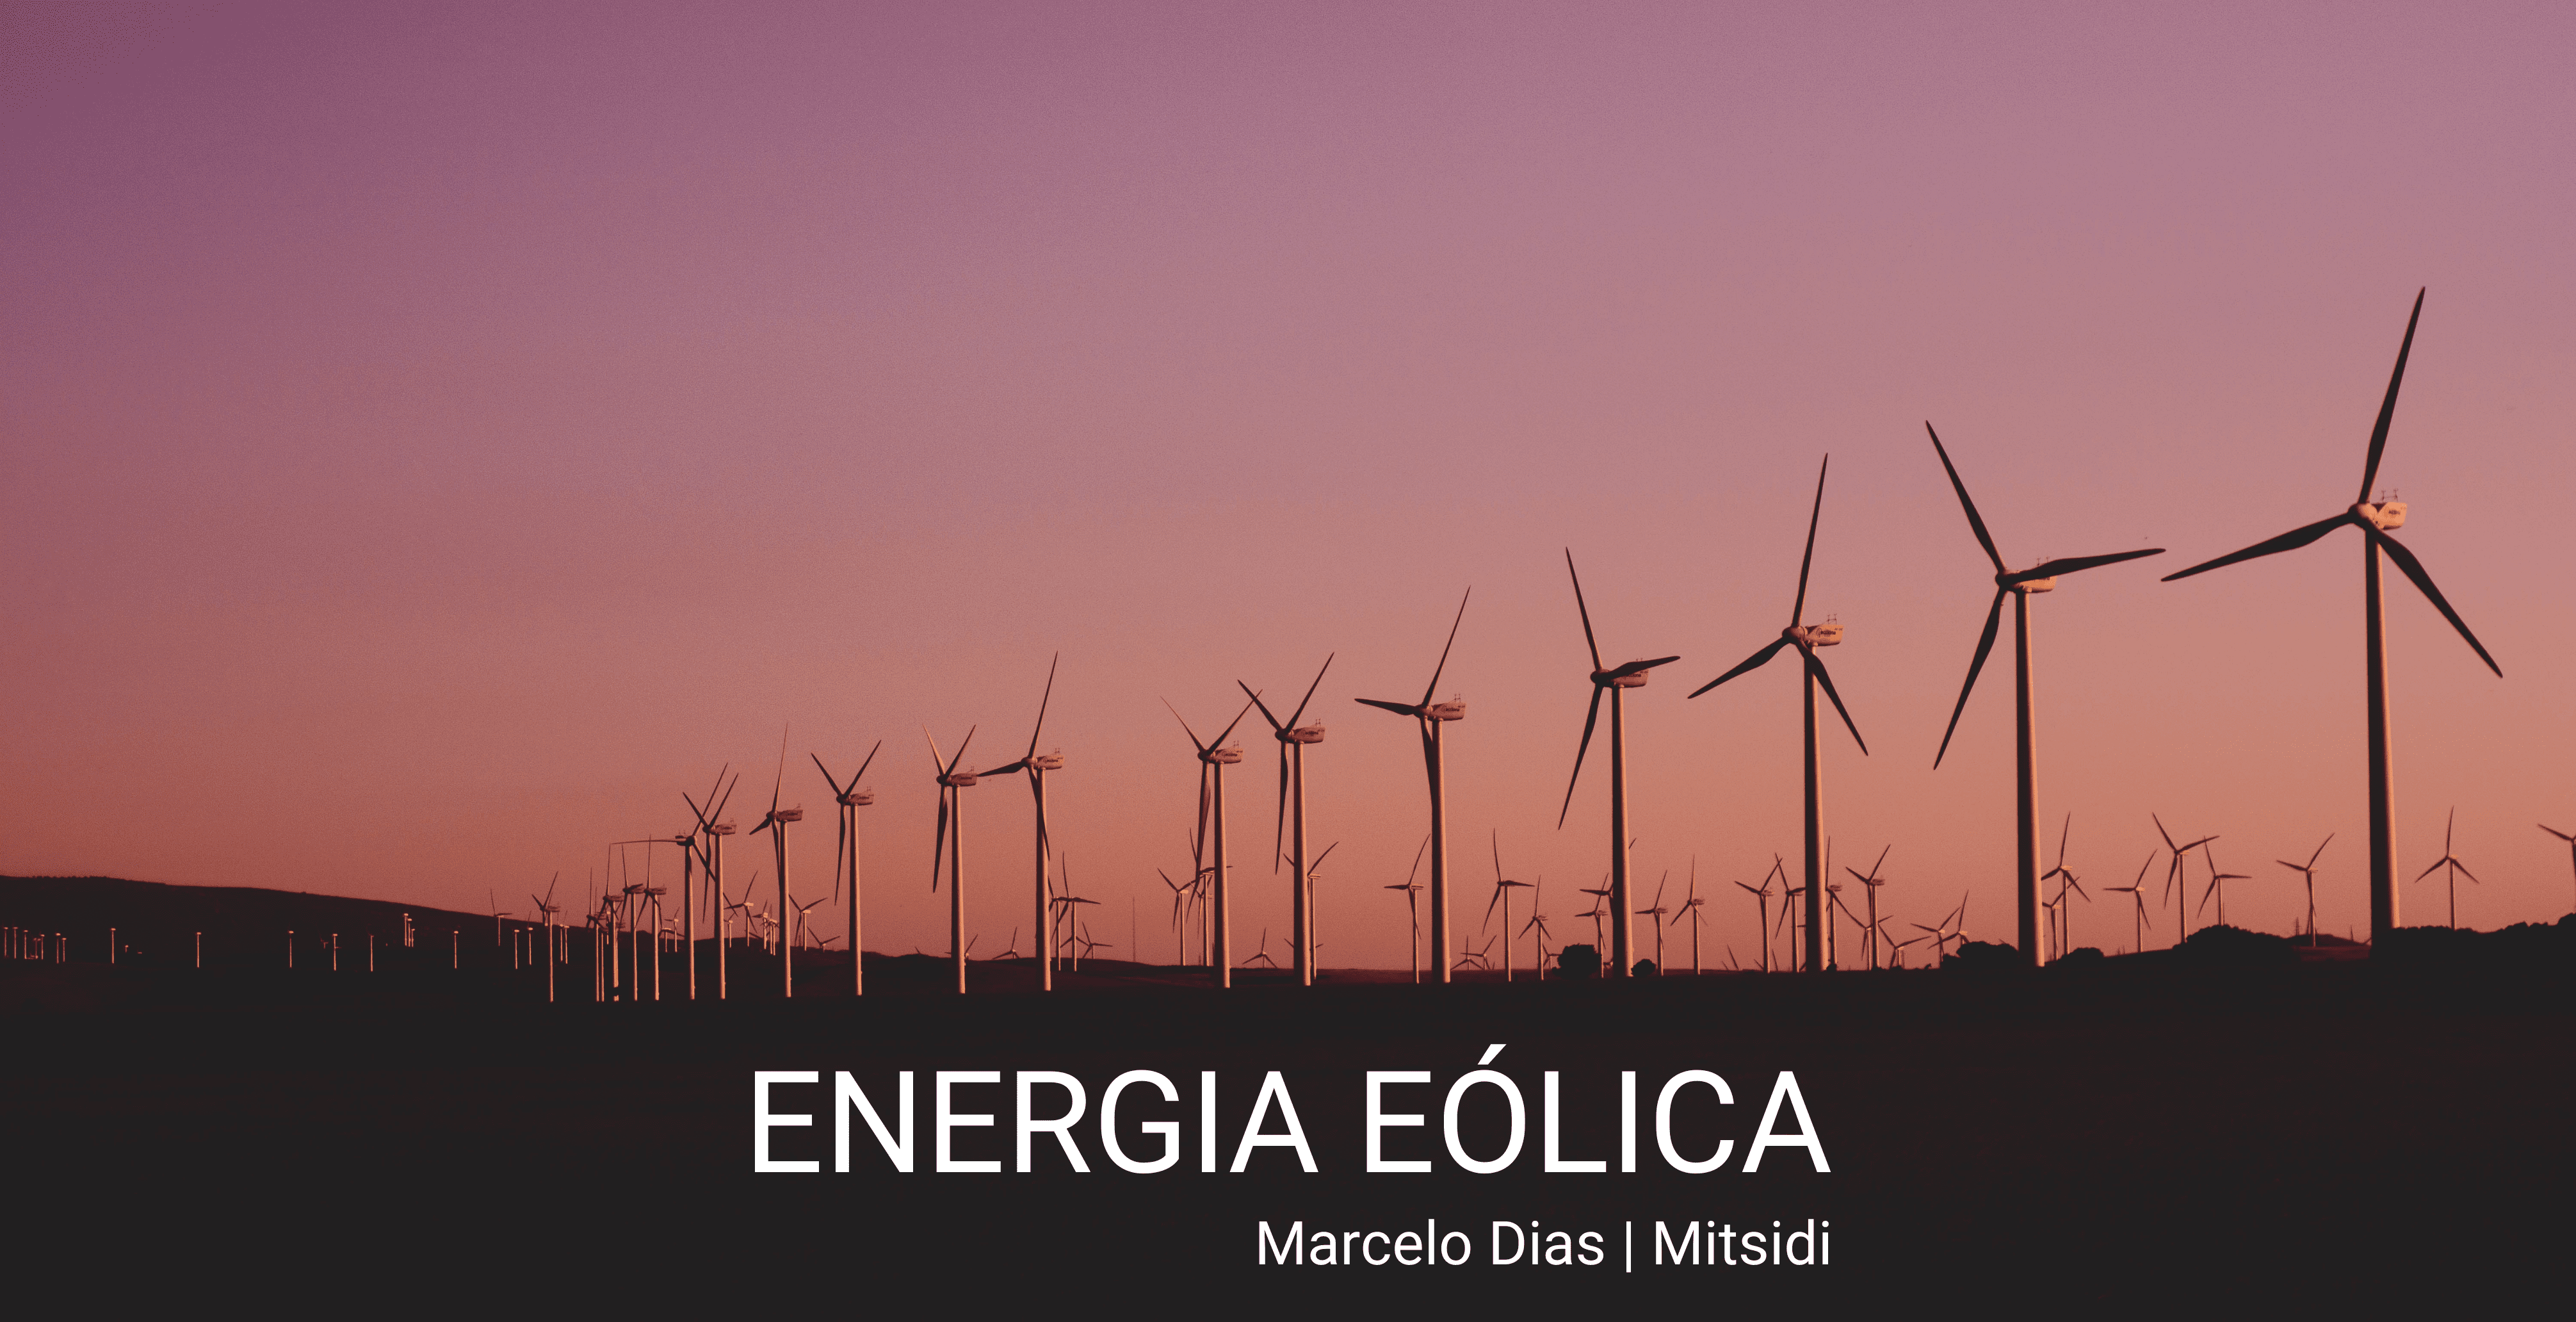 Energia Eólica dá certo no Brasil? Descubra suas vantagens e desvantagens